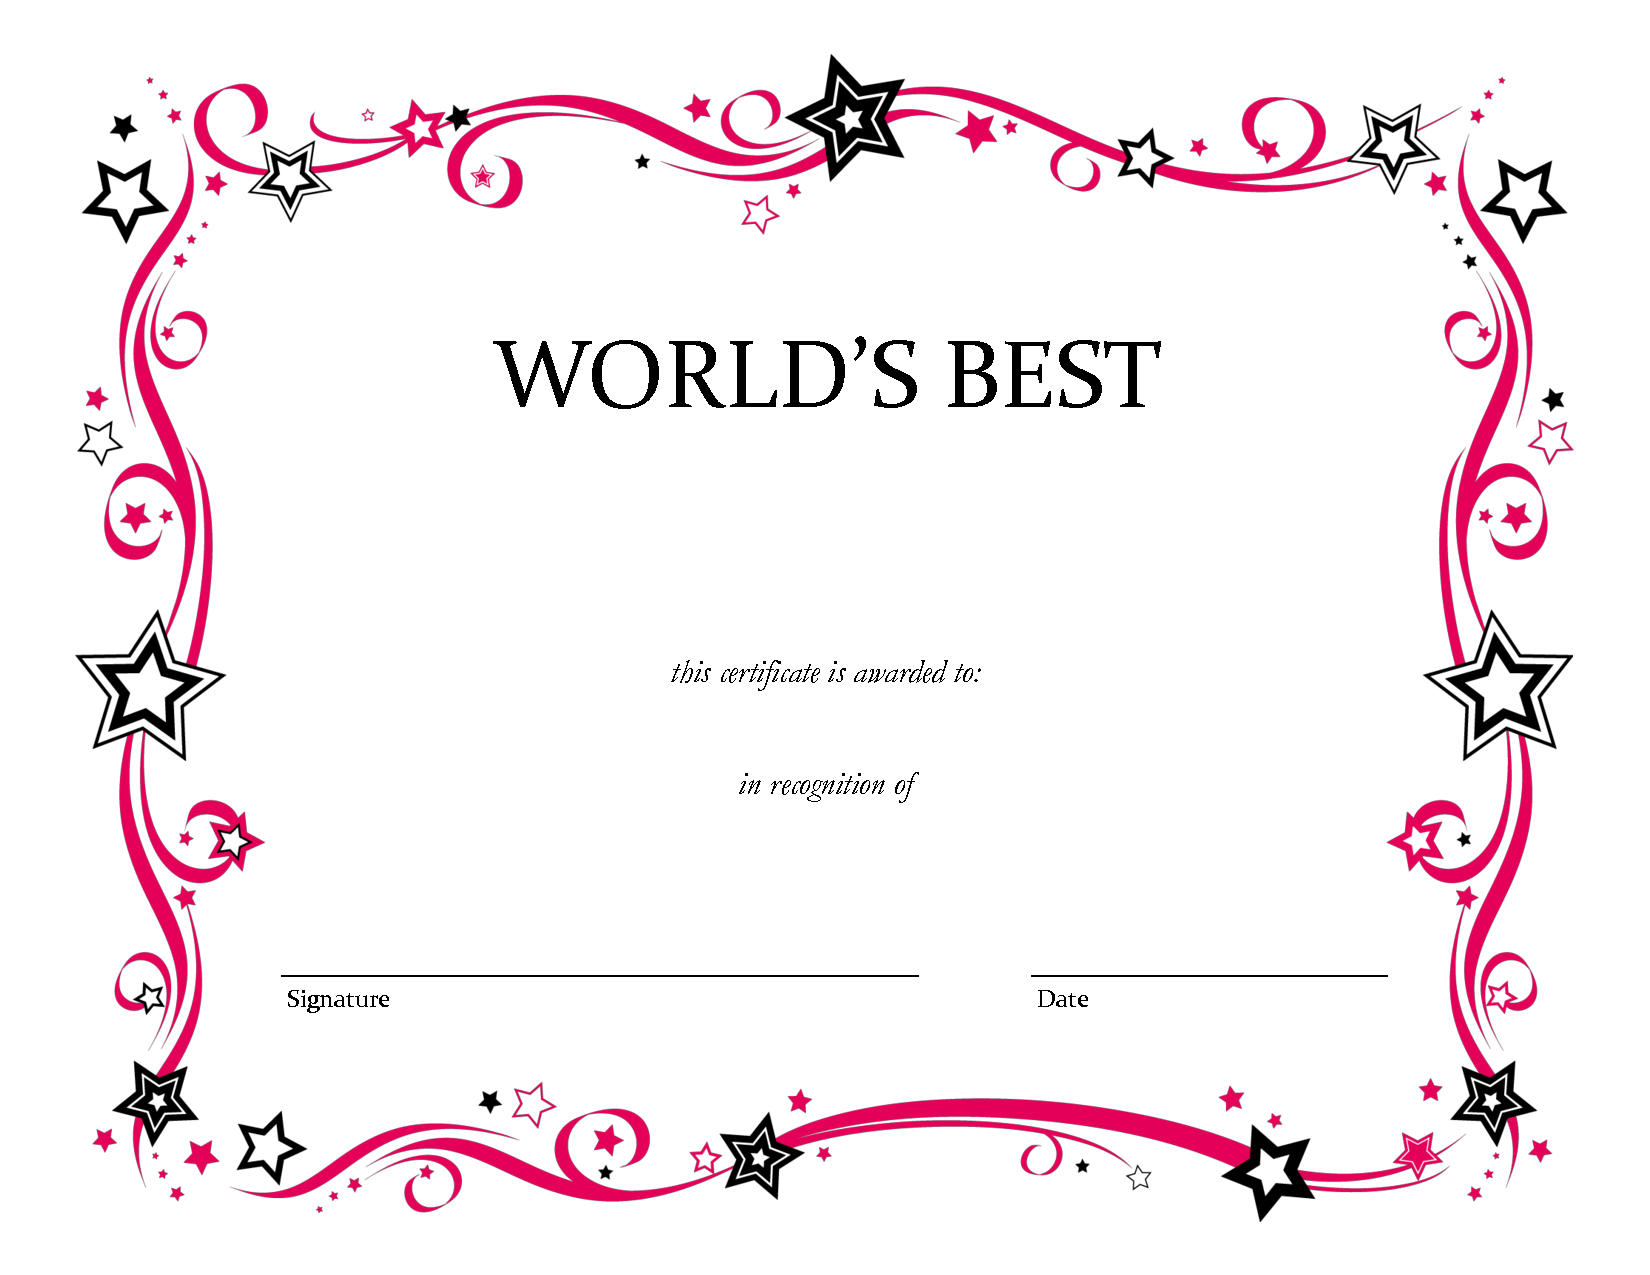 Worlds Best Award Certificate Blank By Misspowerpoint